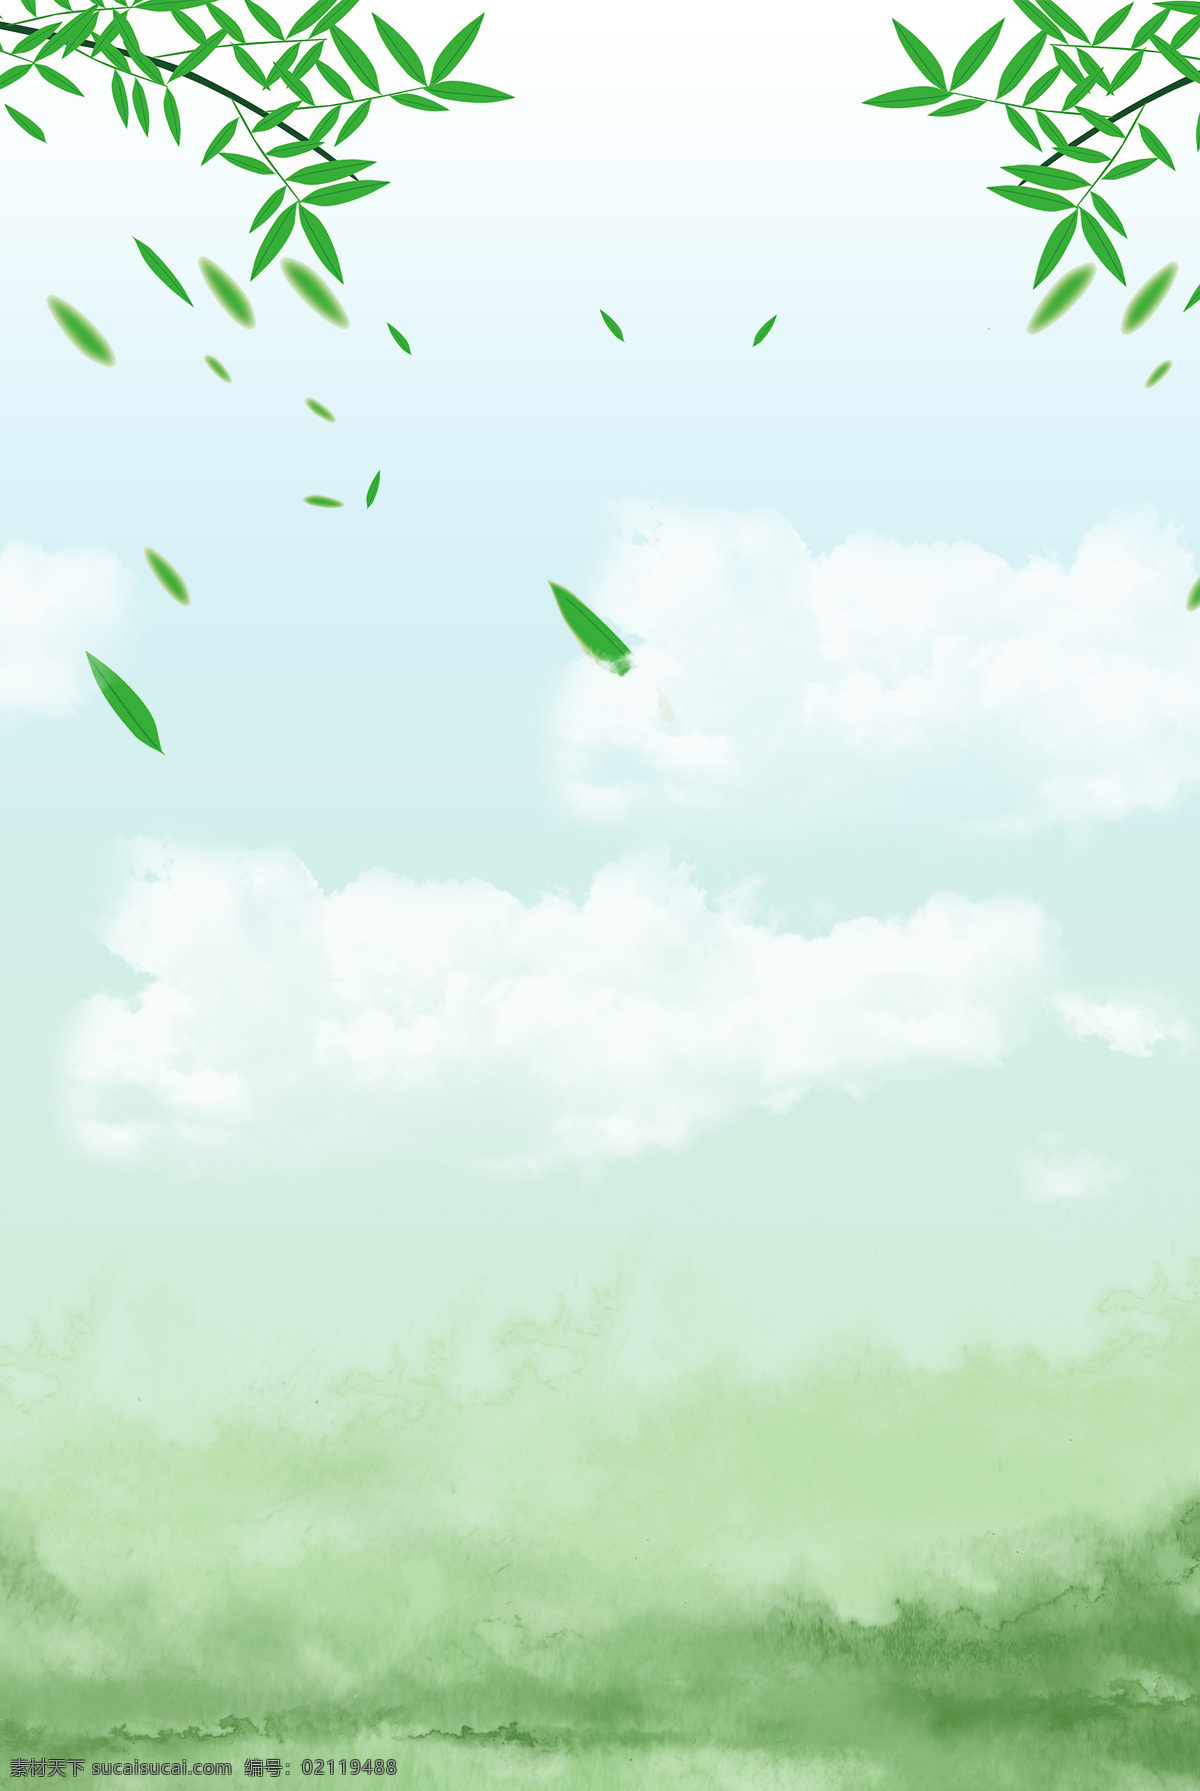 树叶 绿色 天空 清新 飞舞 背景 背景素材